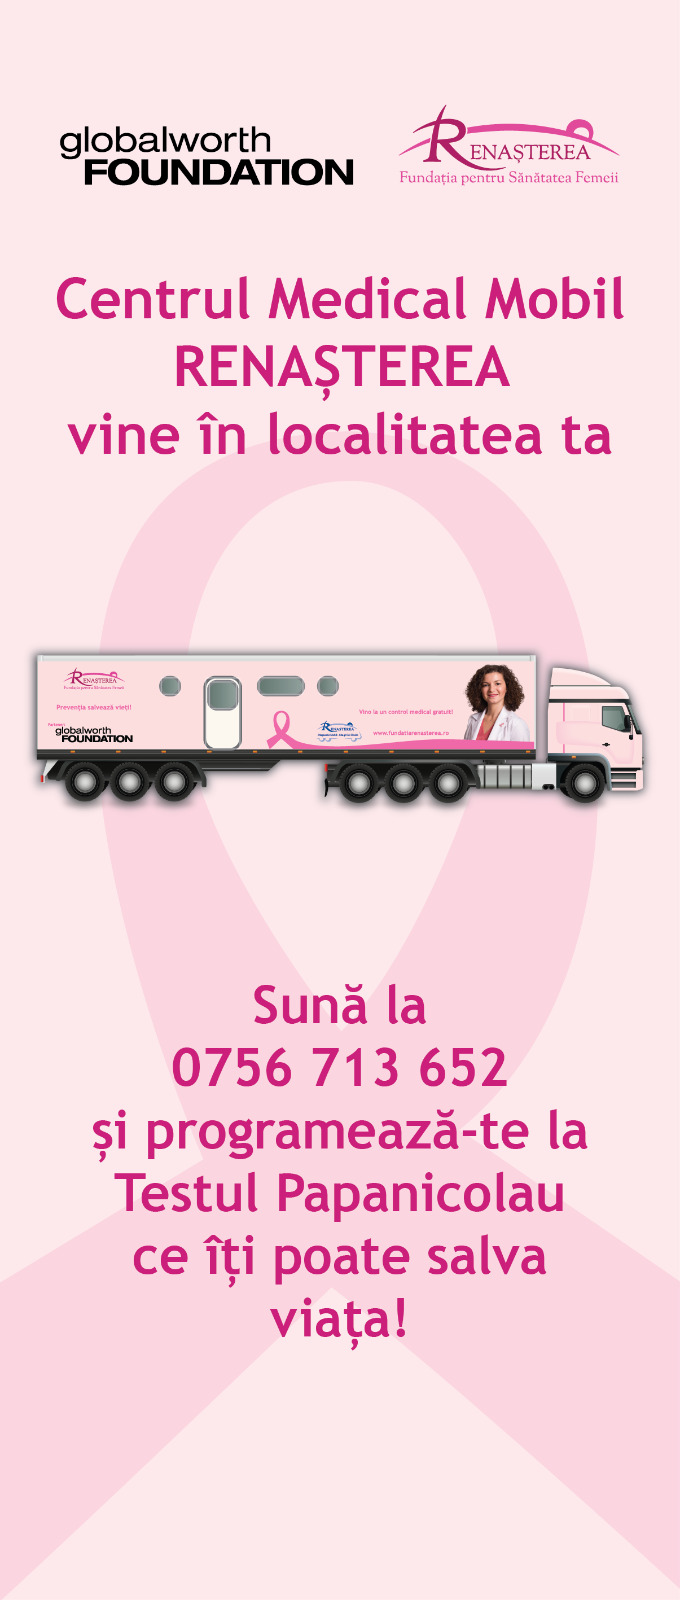 Caravana mobilă pentru screeningul cancerul de col uterin va ajunge zilele acestea în Brezoi